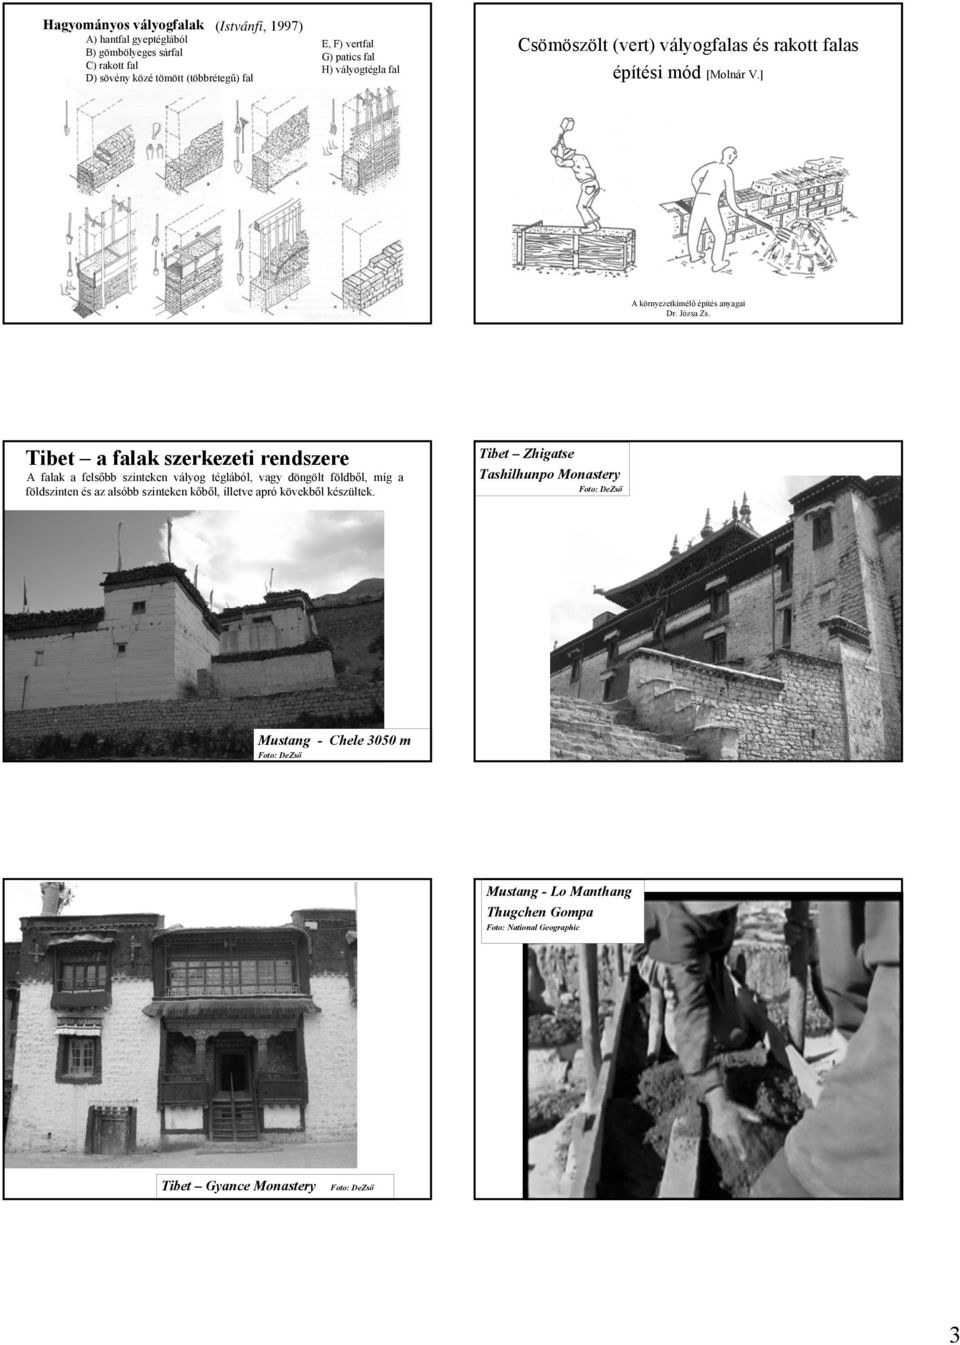 ] Tibet a falak szerkezeti rendszere A falak a felsőbb szinteken vályog téglából, vagy döngölt földből, míg a földszinten és az alsóbb szinteken kőből, illetve